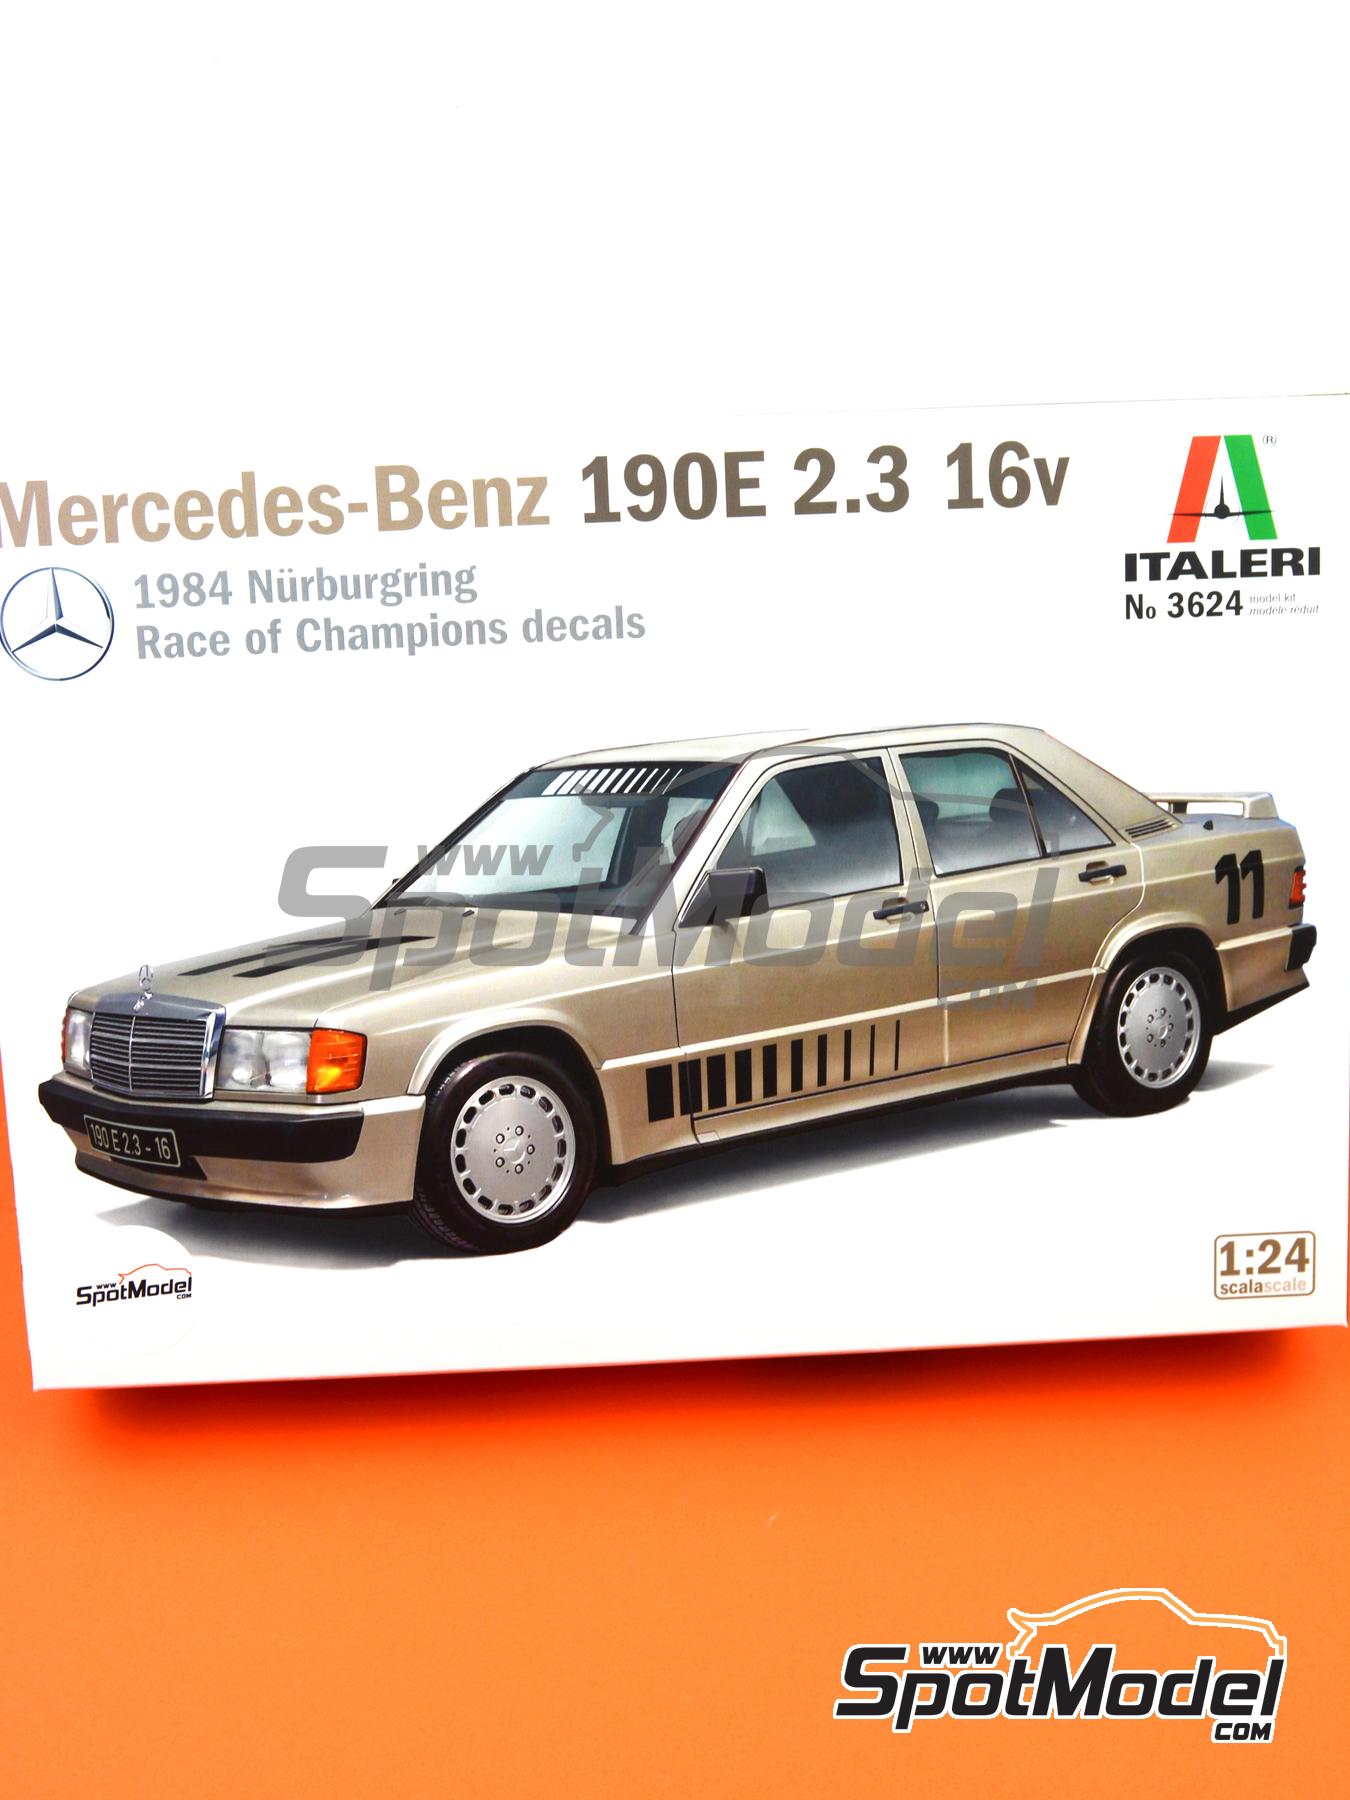 delen Guinness Onbevredigend Italeri: Model car kit 1/24 scale - Mercedes Benz 190E (ref. 3624) |  SpotModel